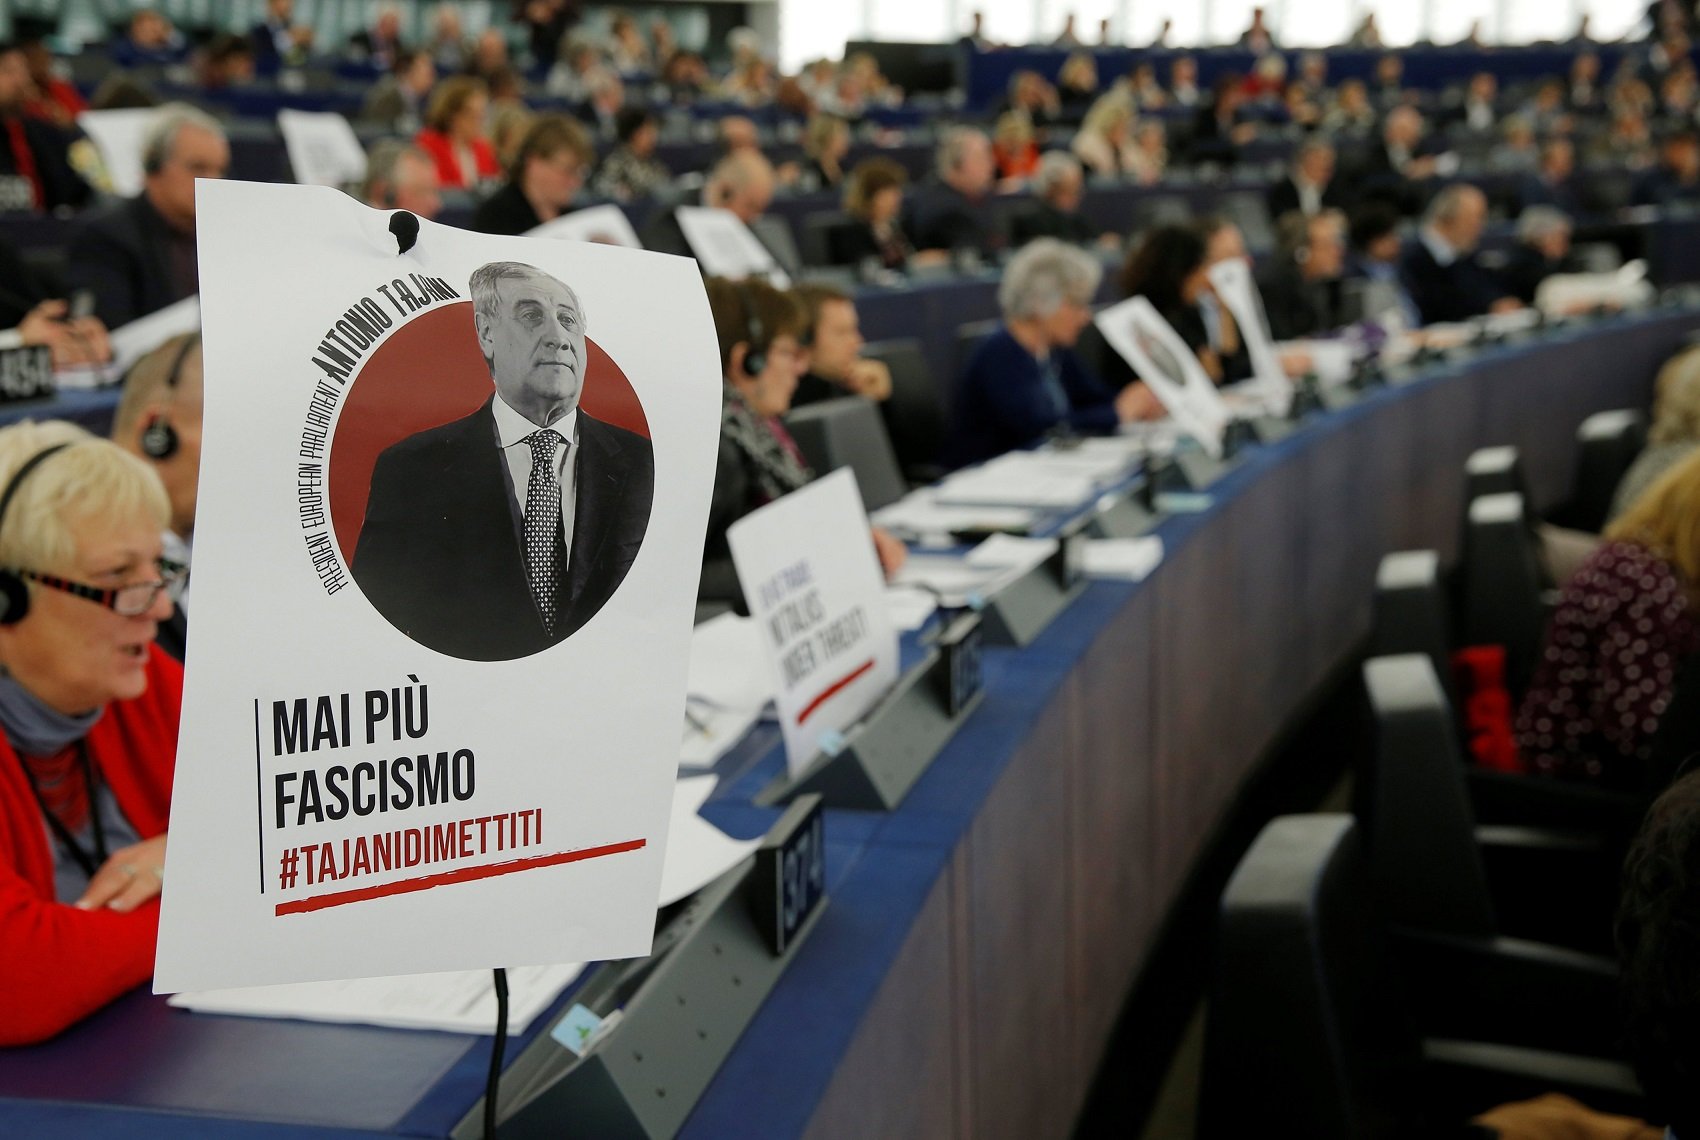 Presionan a Tajani por las declaraciones sobre Mussolini